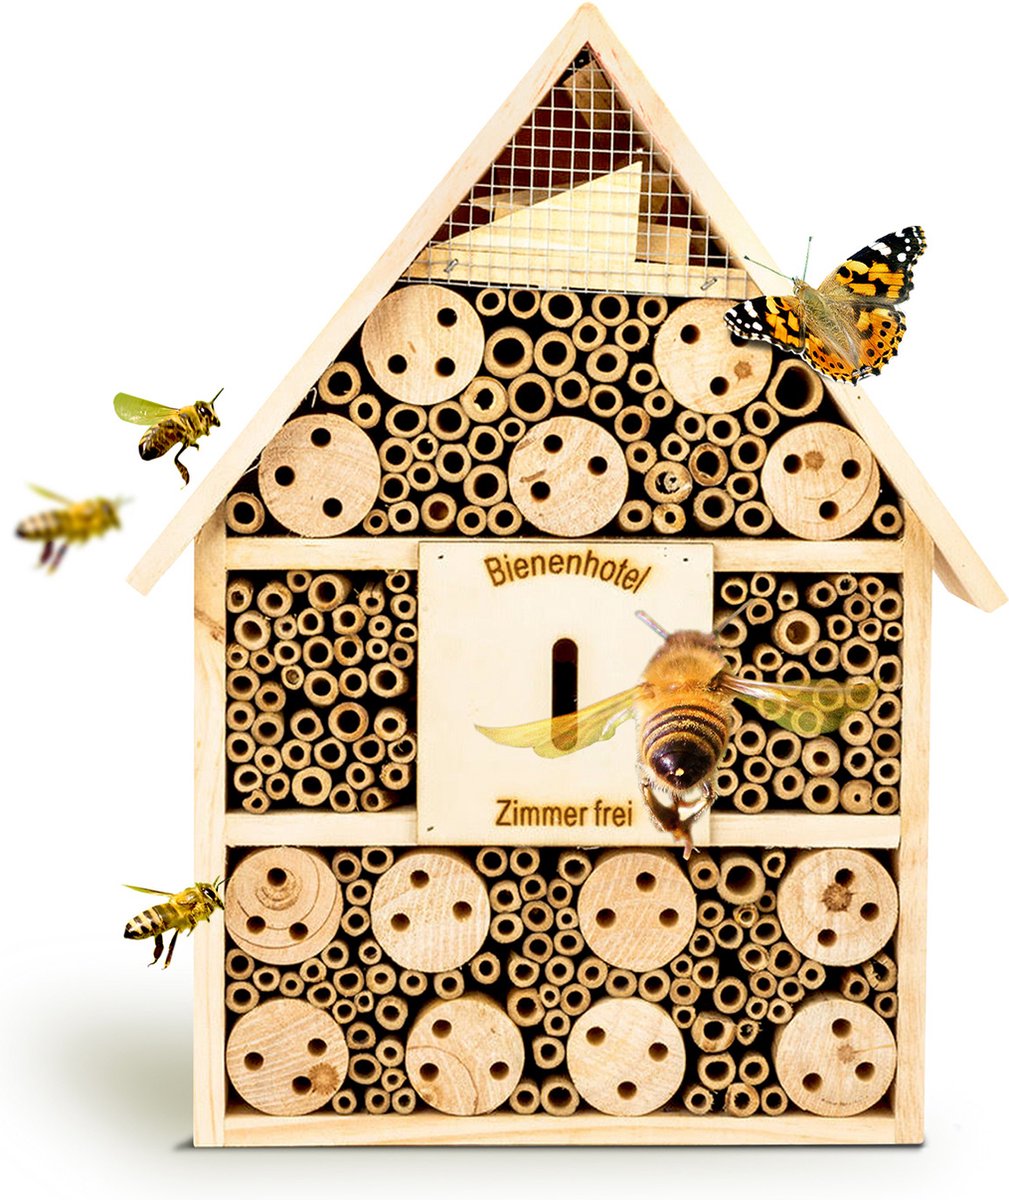 Insectenhotel met puntdak ophangsysteem hele jaar bewoonbaar hout - Blumfeldt